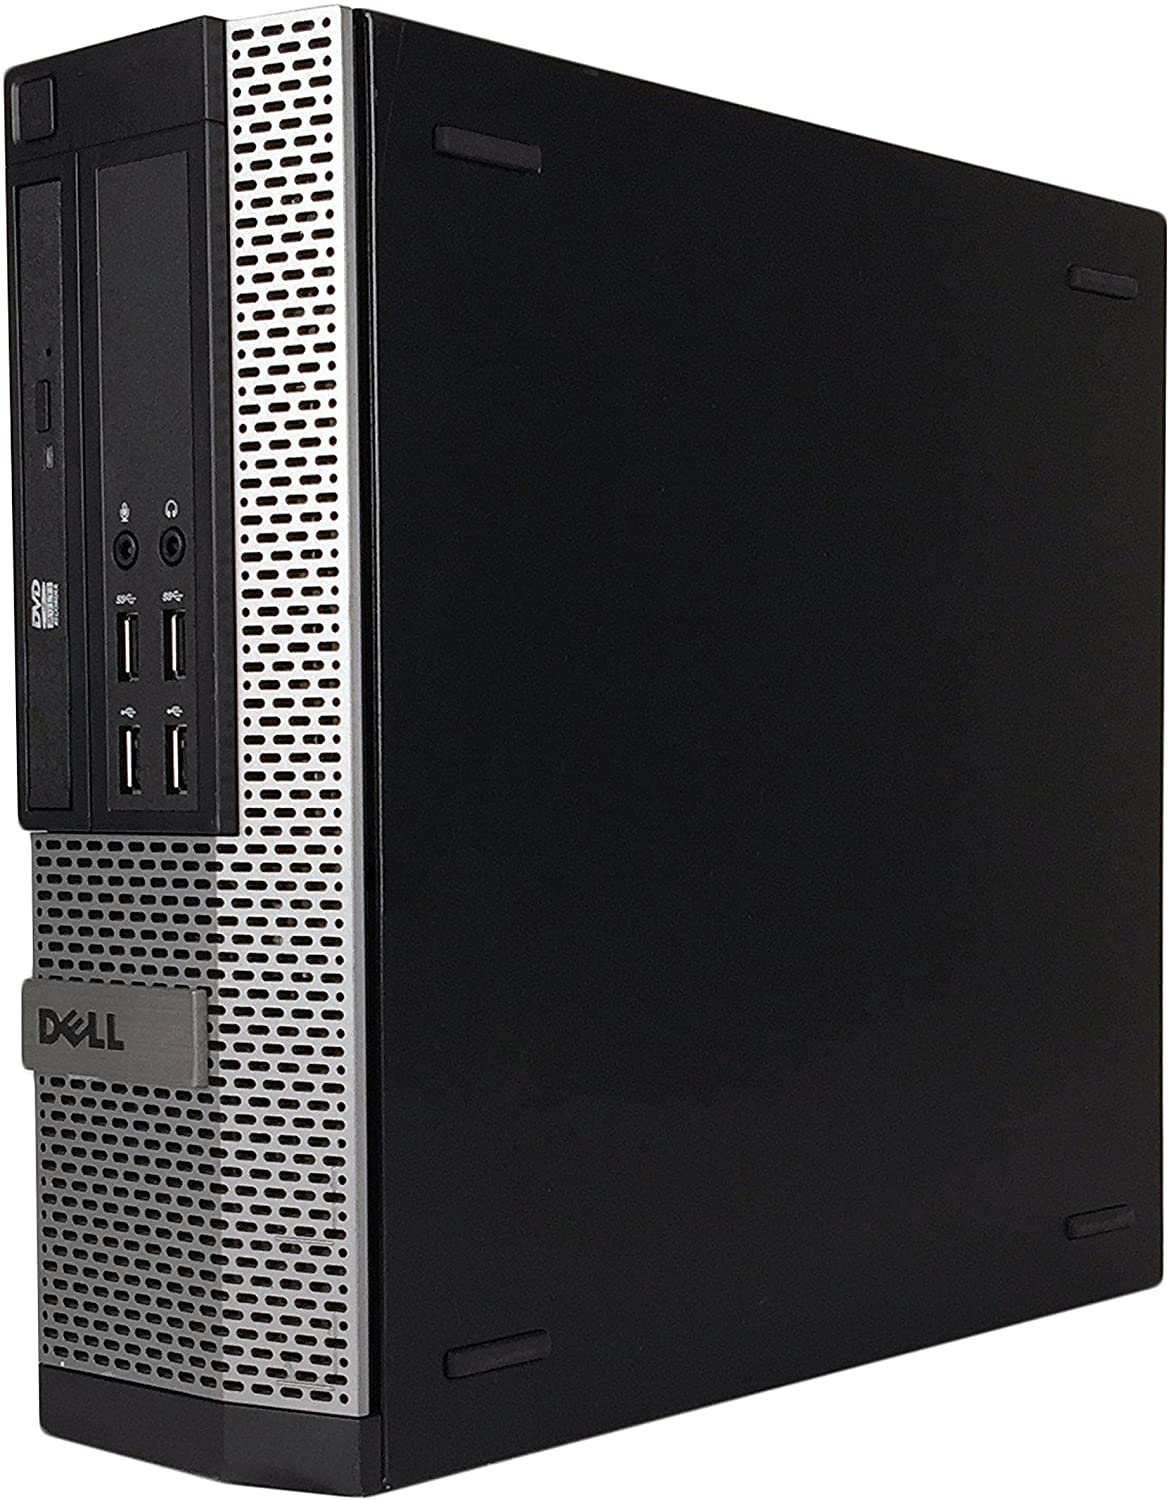 Dell 9020 SFF Business Desktop Mini Tower(Core i5-4770,8GB Ram,240GB SSD,WIFI,DVDRW)Win10Pro Renewed